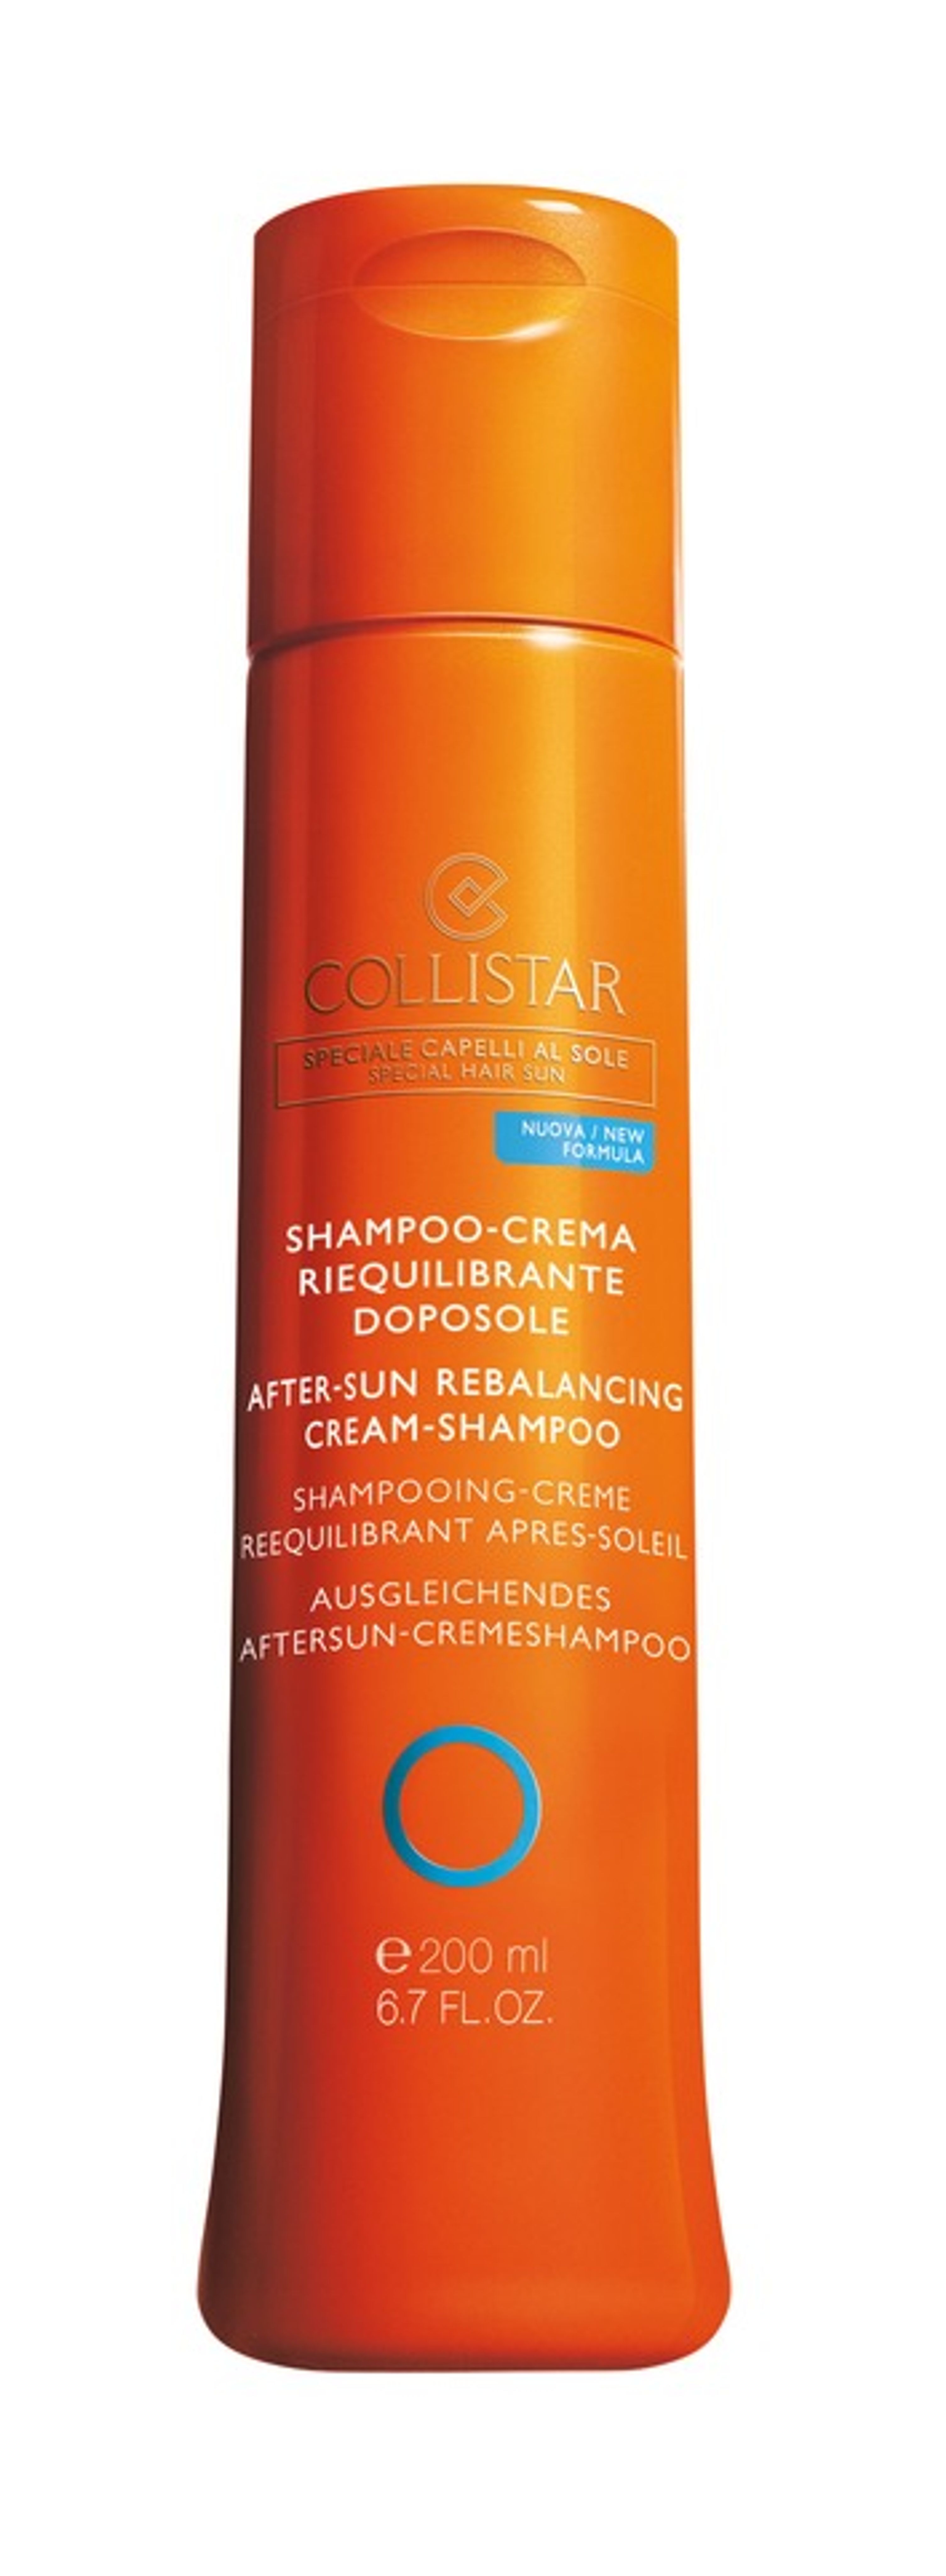 Collistar Shampoo-crema Riequilibrante Doposole 1